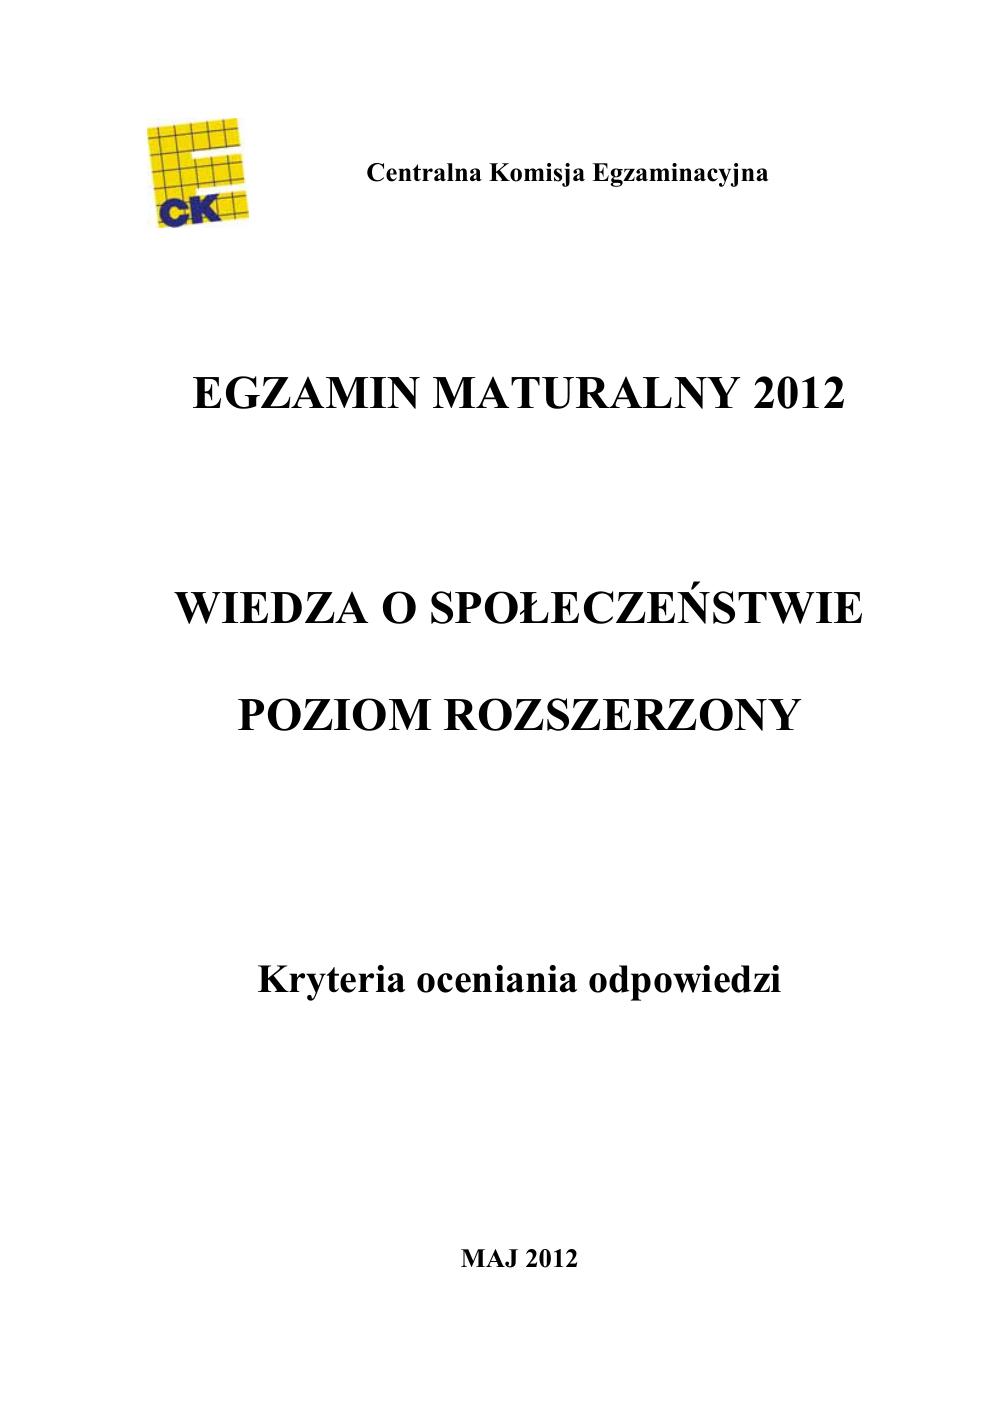 WOS rozszerzony - matura 2012 - odpowiedzi-01